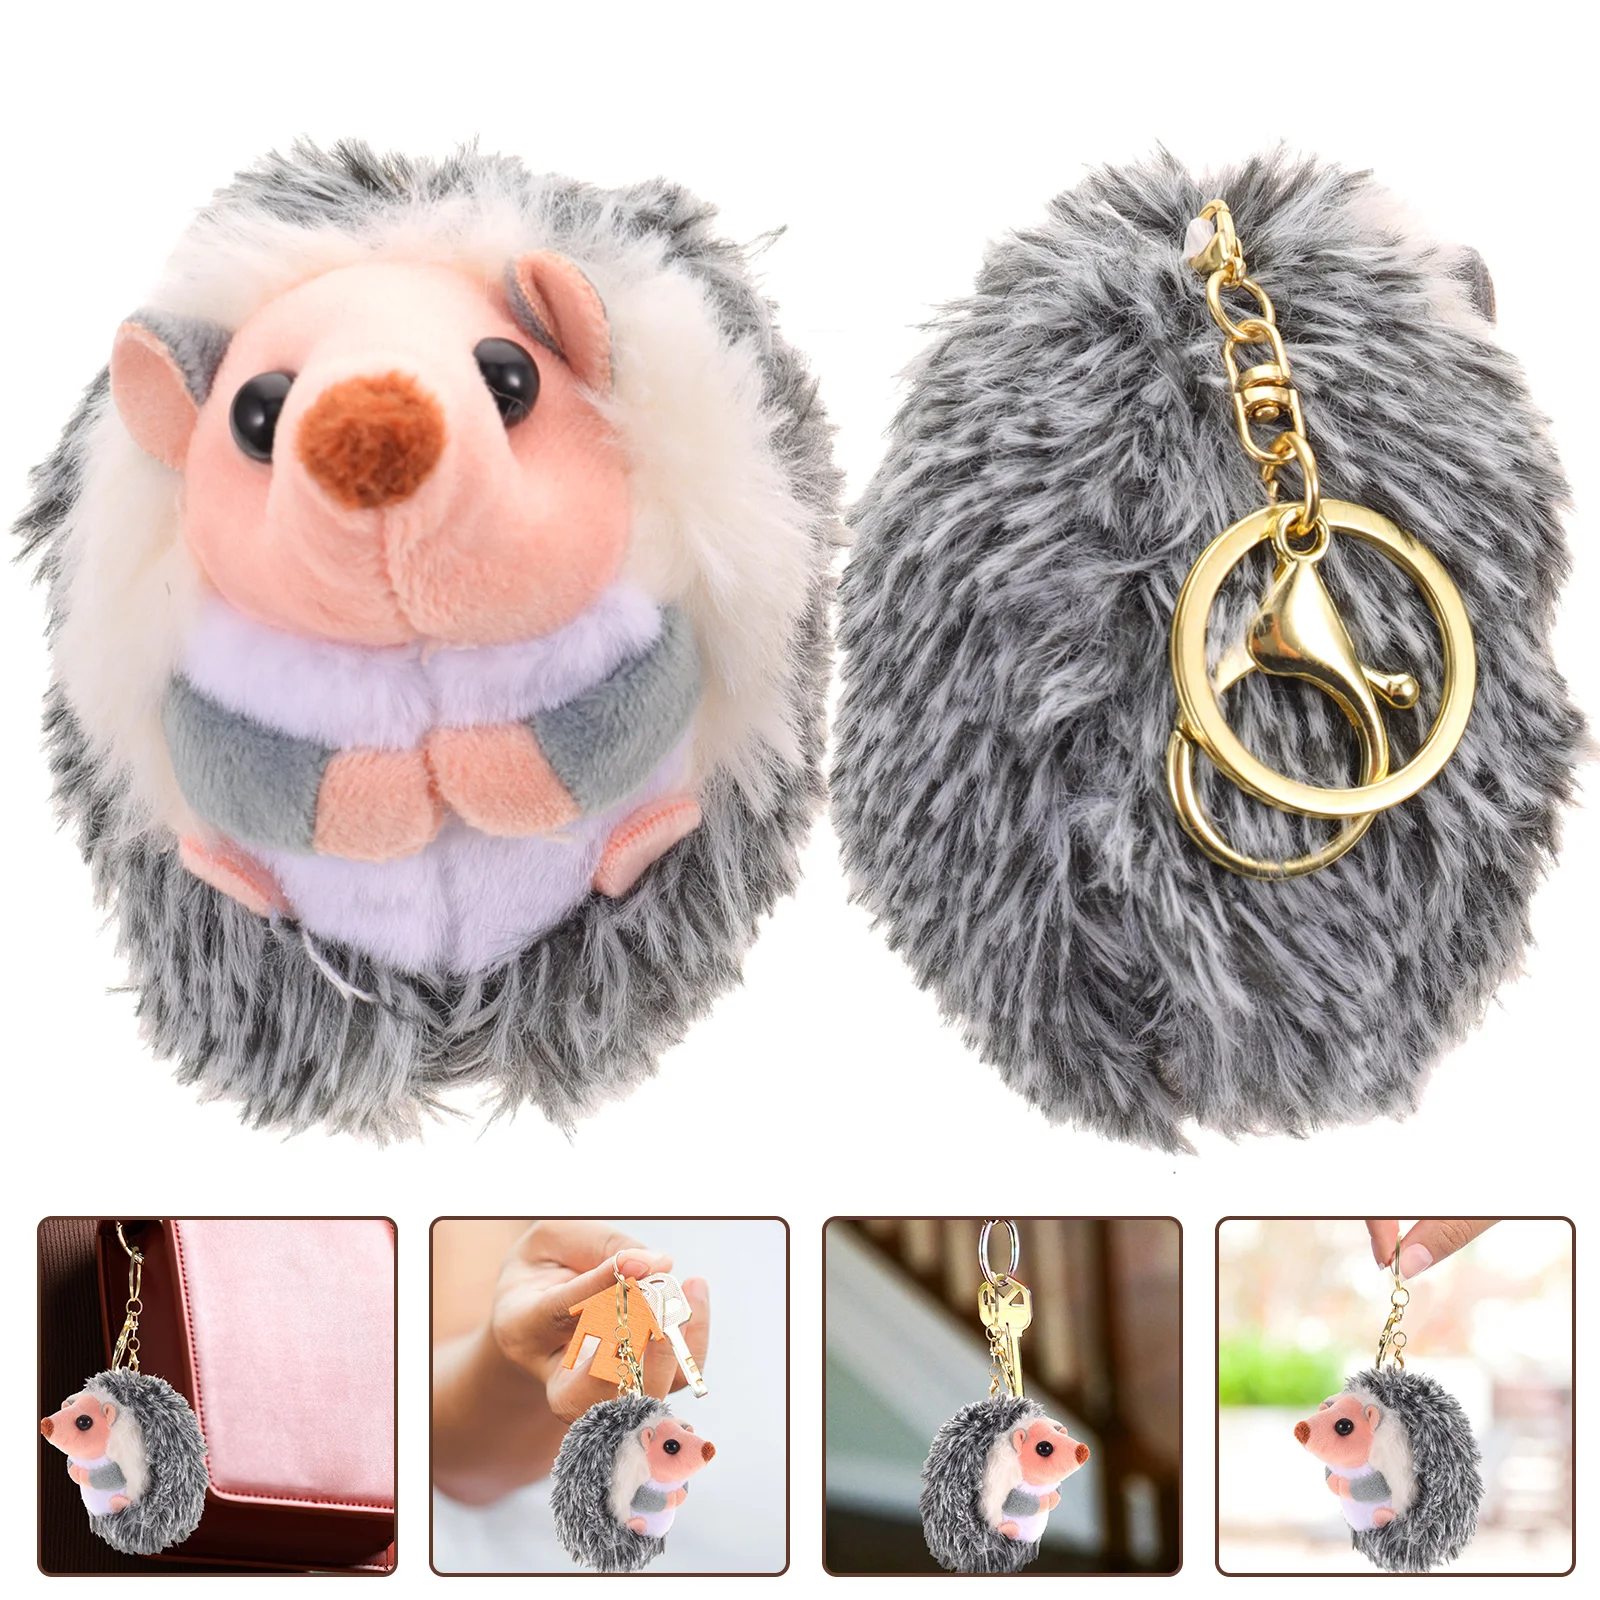 

2 Pcs Decorations Little Hedgehog Pendant Child Stuff Animal Cute Model Pp Cotton Bag Toy